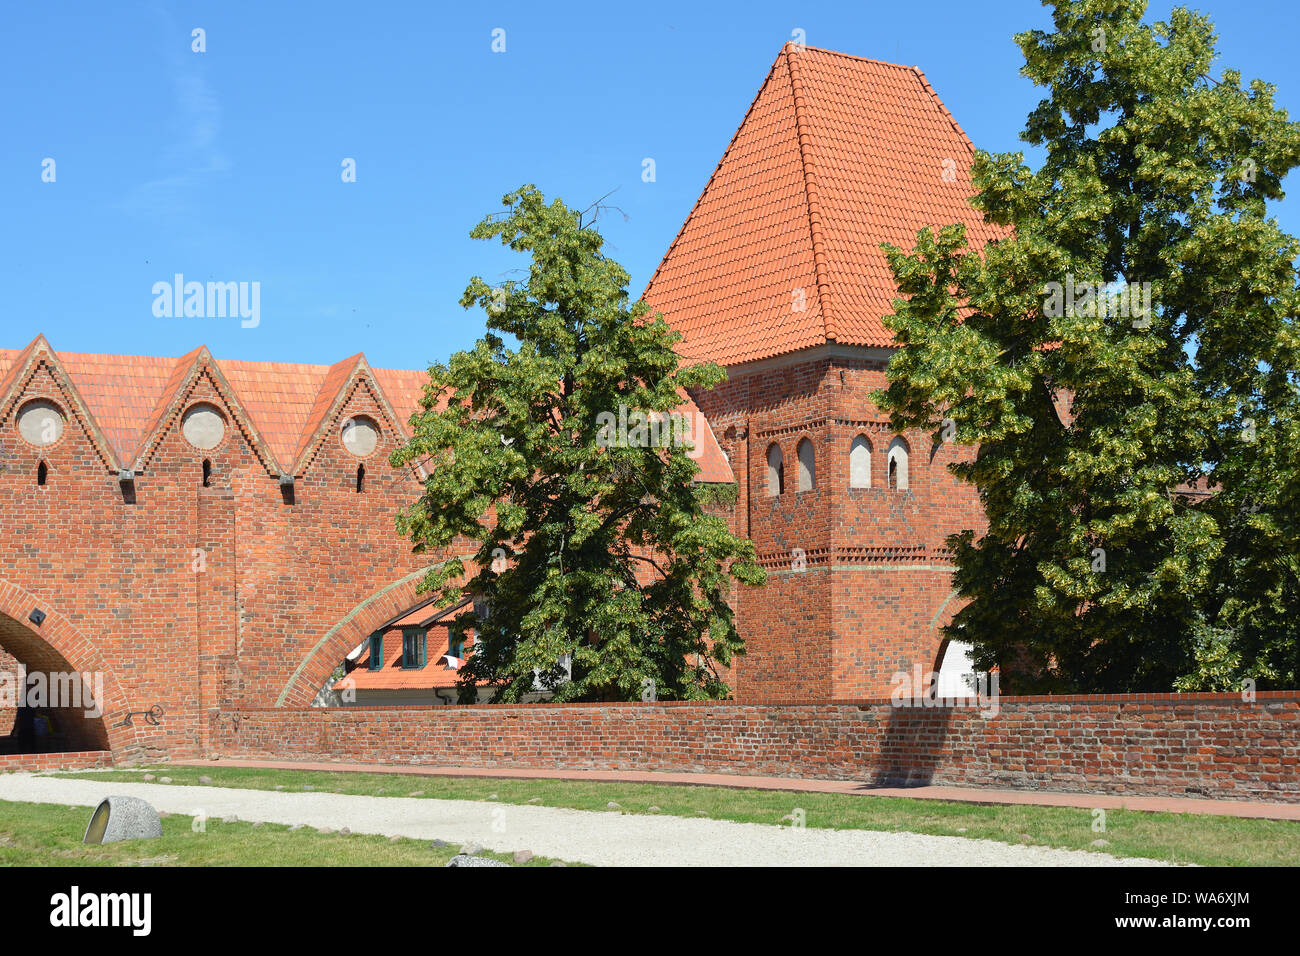 Château de Torun construit en 1260 par l'Ordre des Chevaliers teutoniques comme une forteresse - Pologne. Banque D'Images